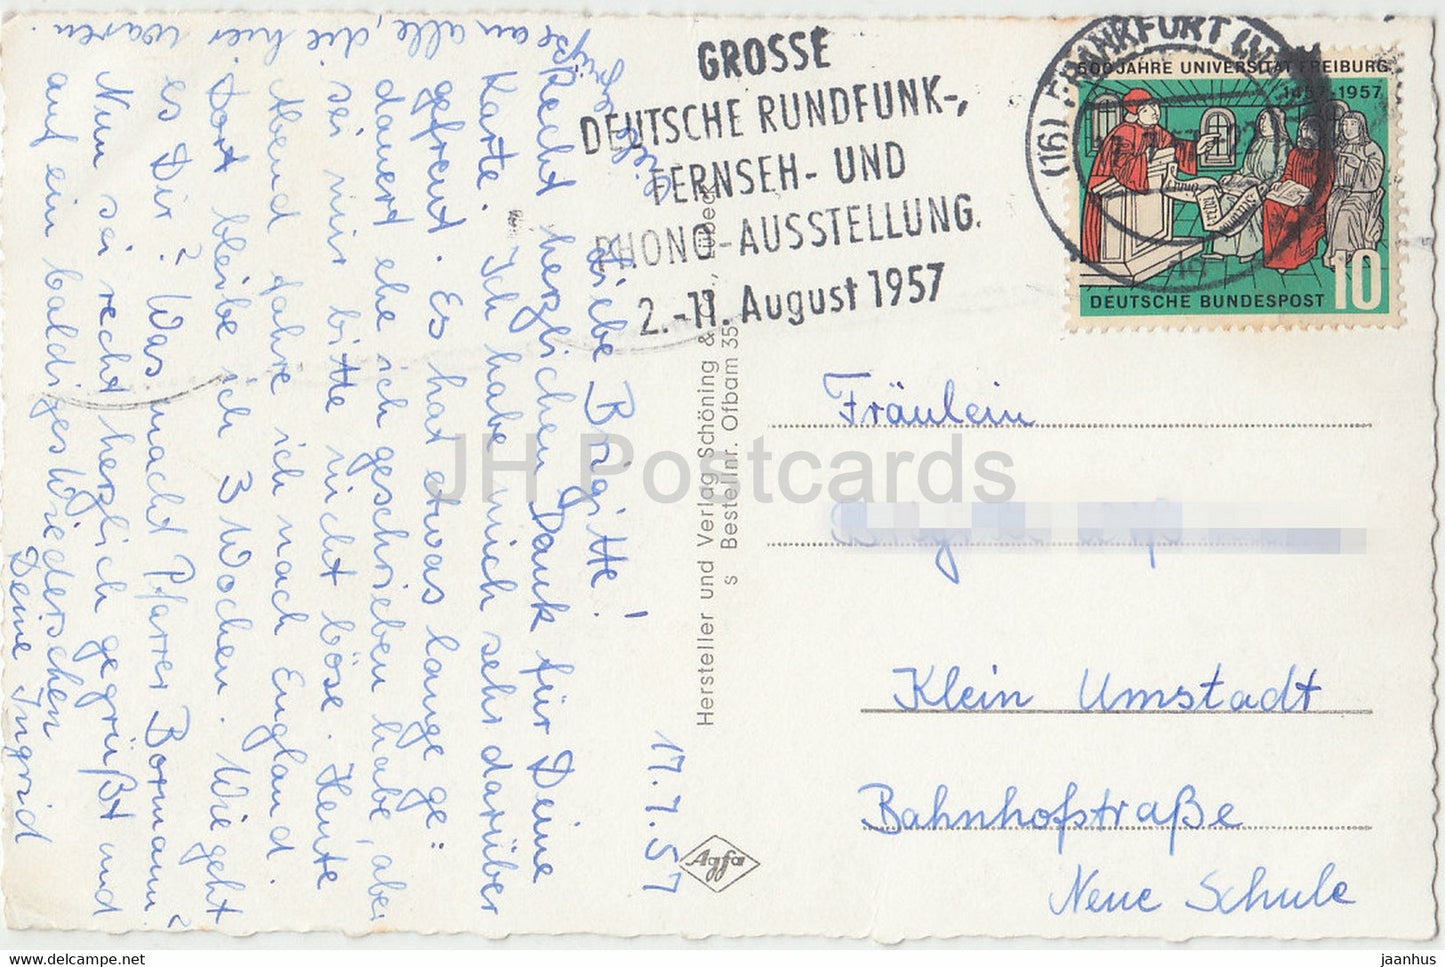 Grusse aus der Lederstadt Offenbach am Main - Ledermuseum - Karl Ulrich Brucke - old postcard - 1957 - Germany - used